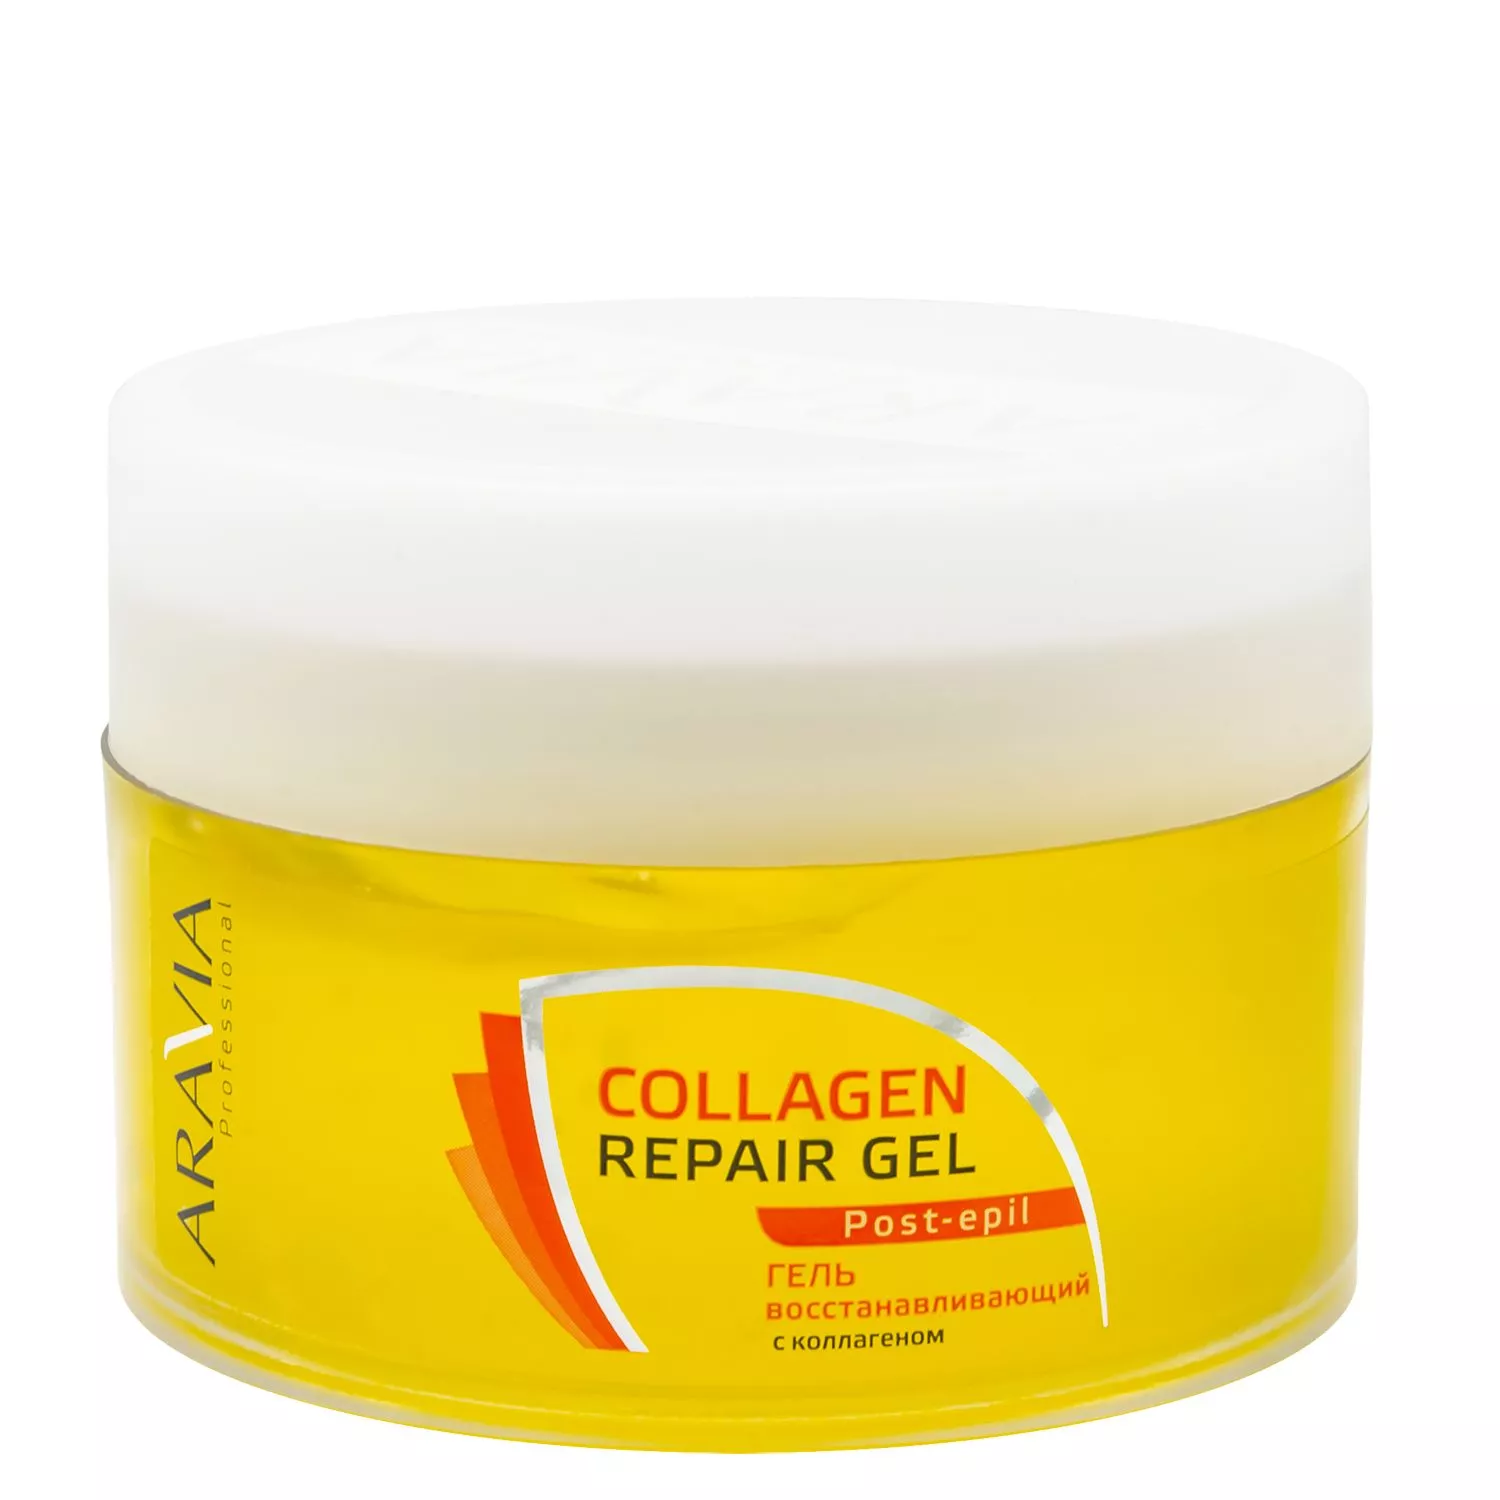 Гель восстанавливающий аравиа. Collagen Repair Gel Aravia. Collagen Repair Gel Post epil. Аравия крем с коллагеном для лица.